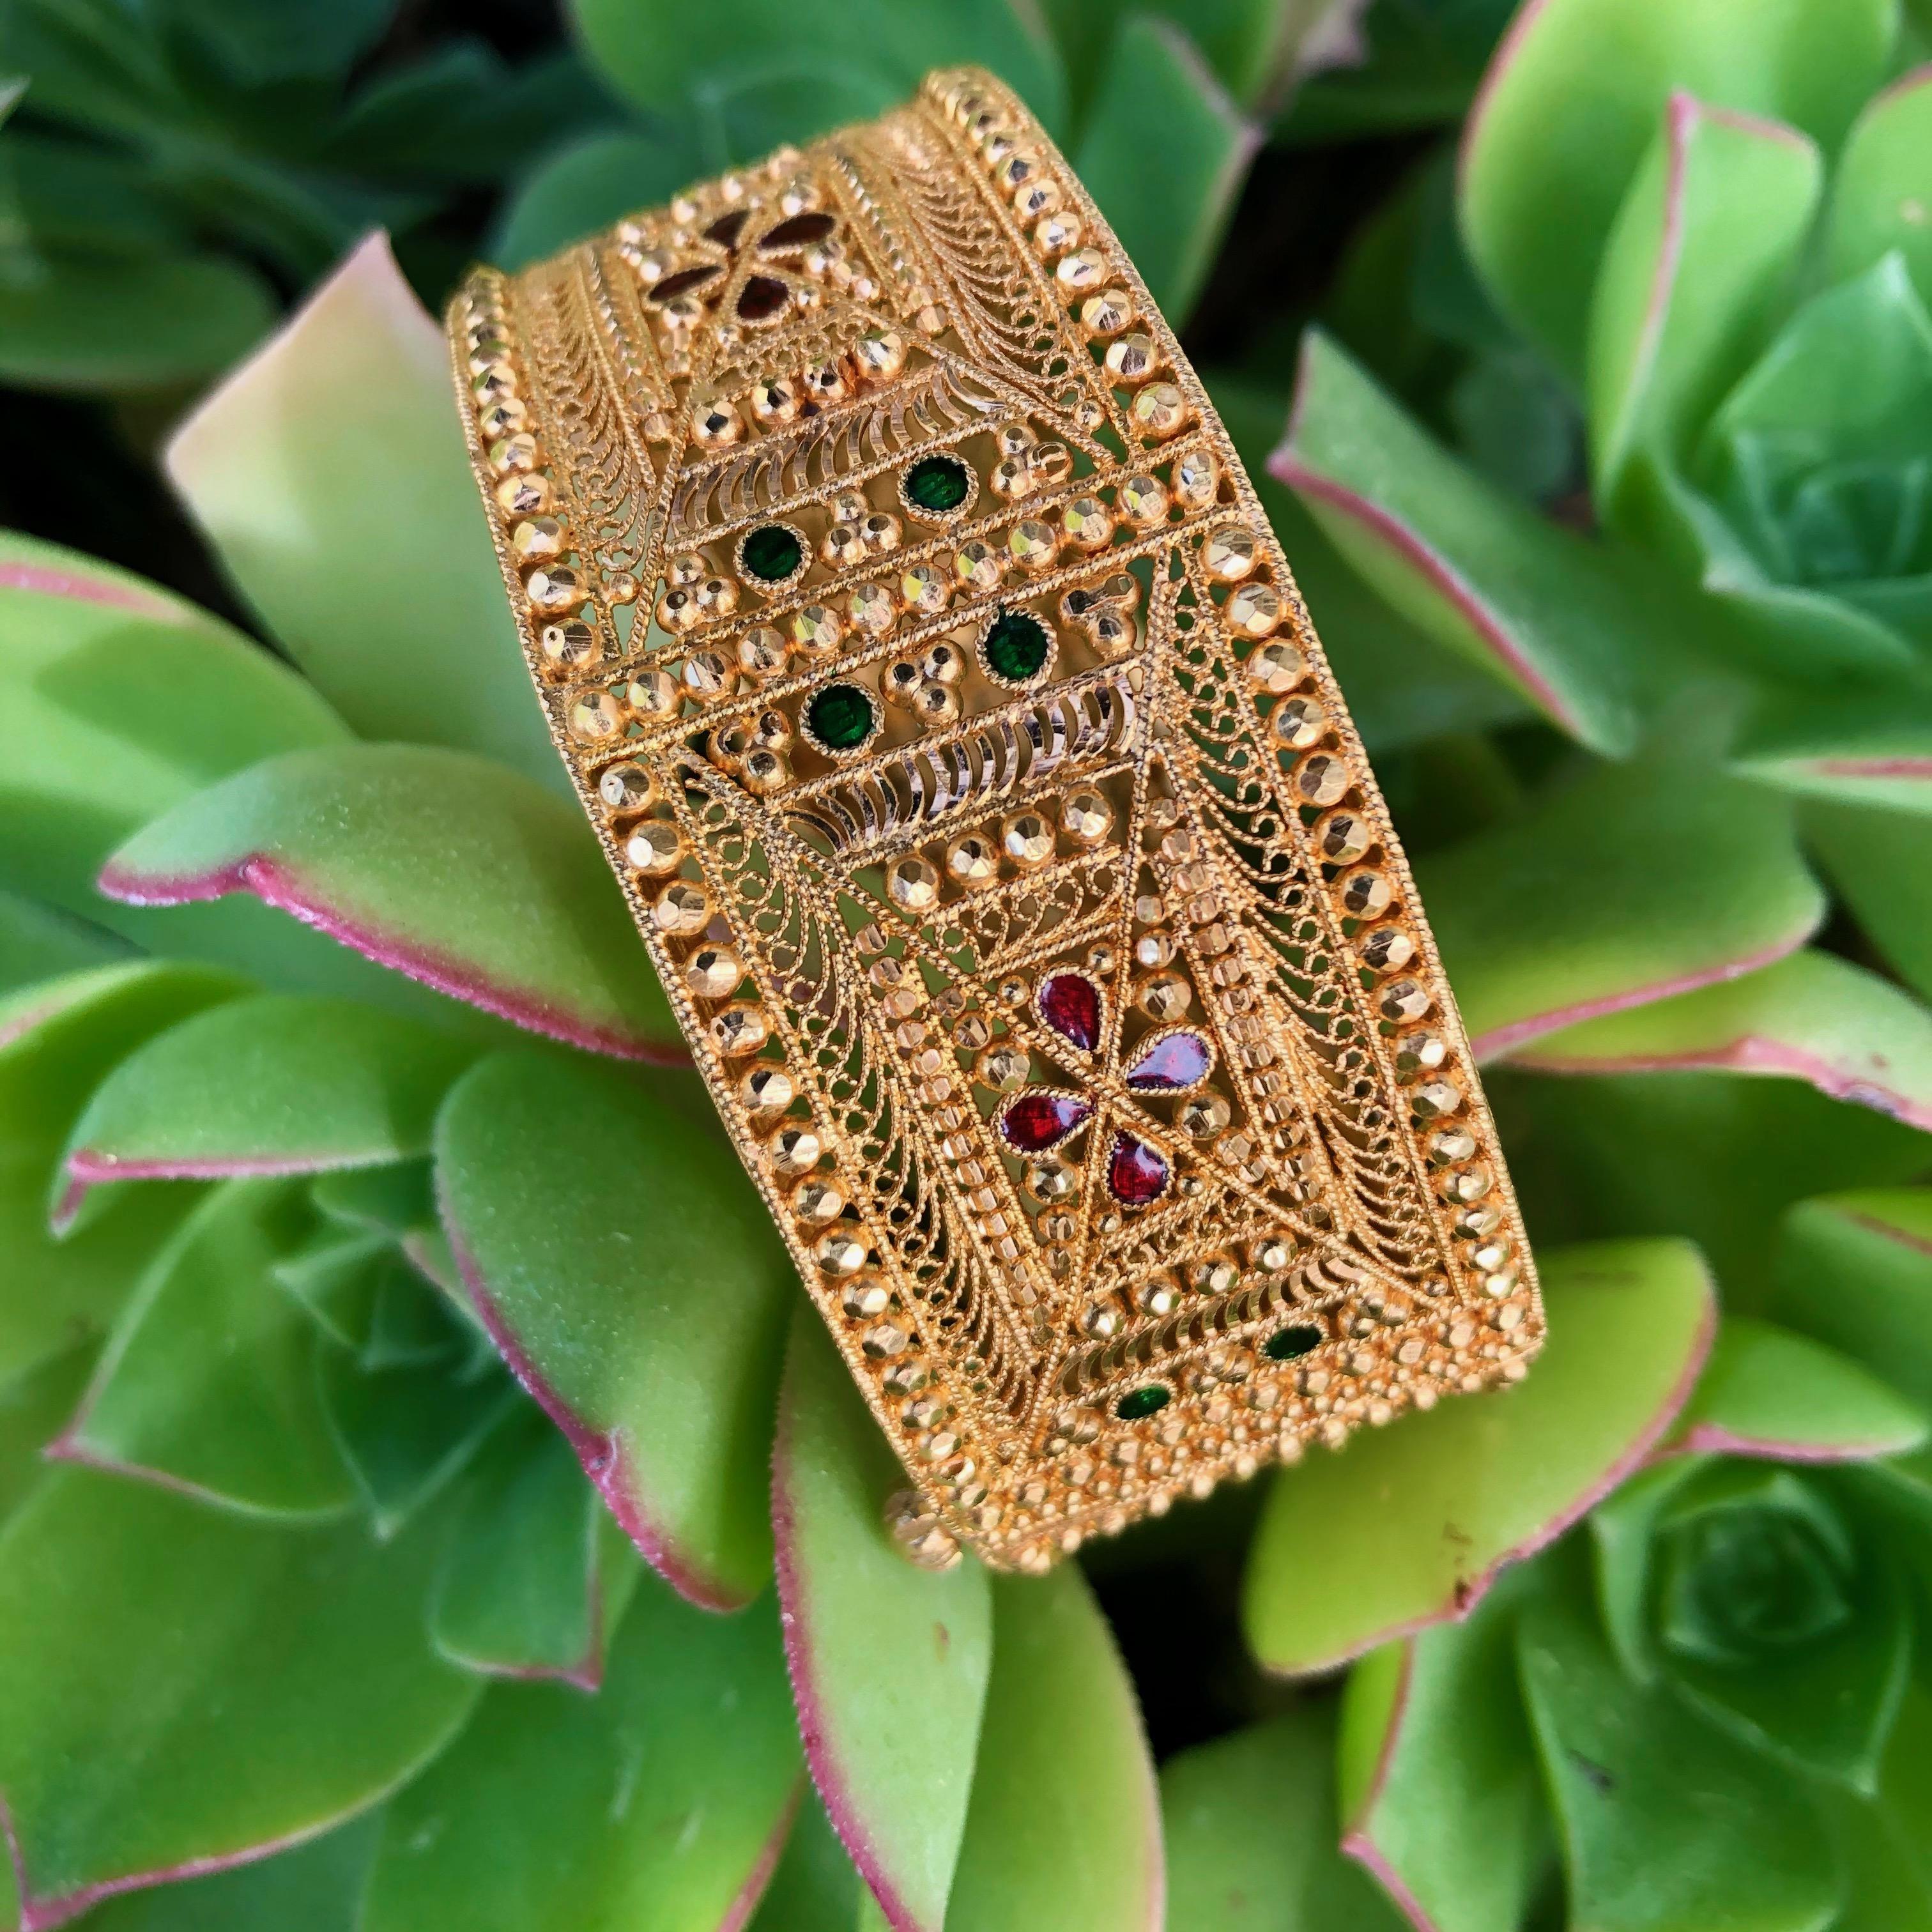 Hübsches Armband im orientalischen Stil aus 21 Karat Gelbgold. Das Armband hat ein verziertes Design mit filigranen Arbeiten, facettierten Perlen, handgravierten Kanten und kleinen Bereichen mit roter und grüner Emaille. Das Armband misst 25 mm in